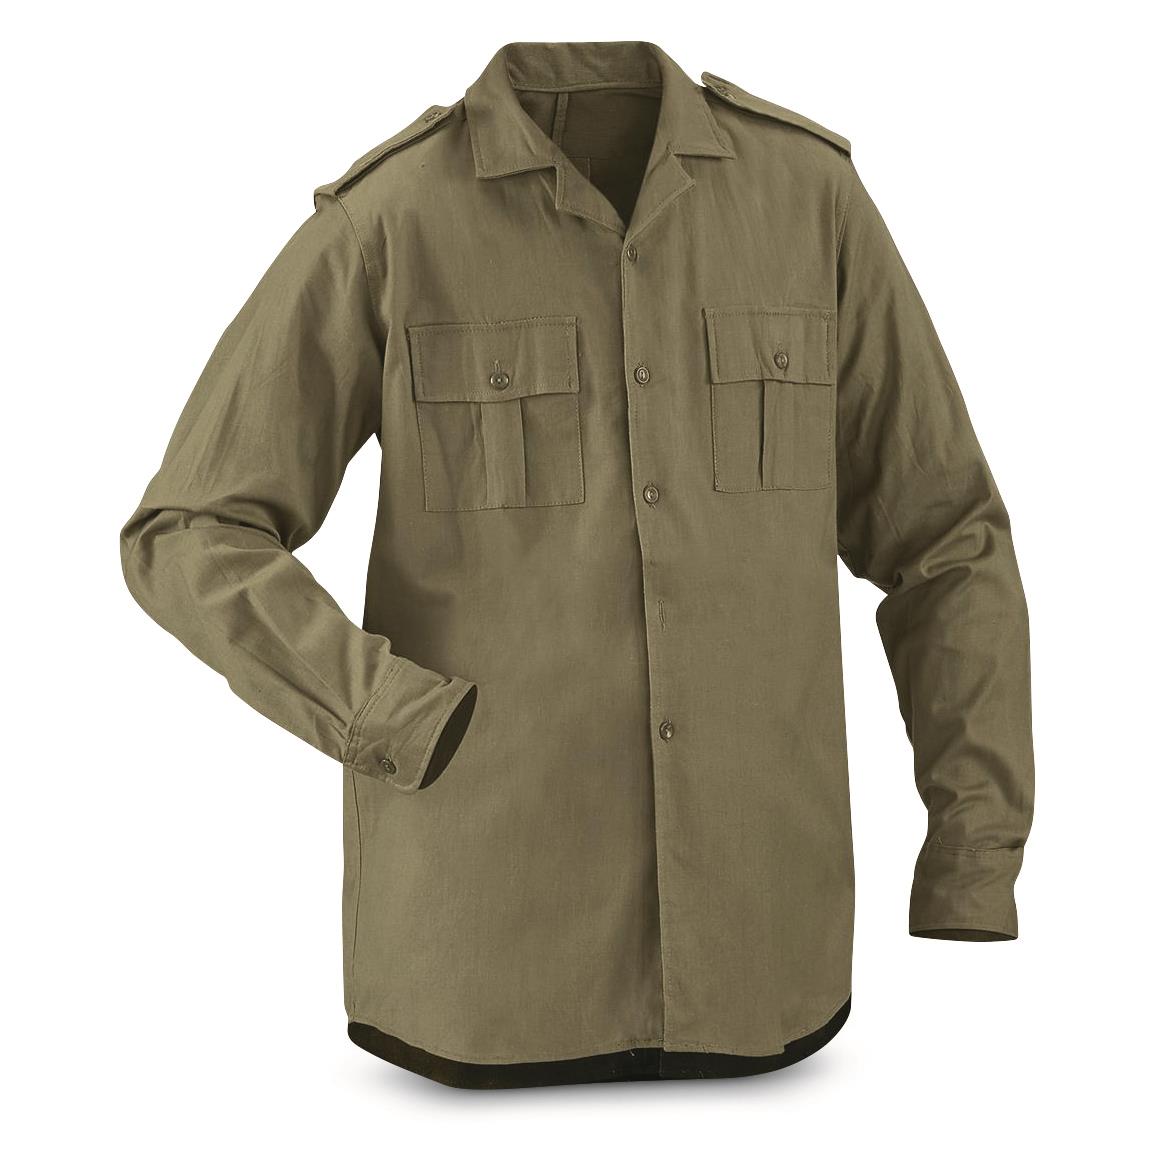 Romanian Military Surplus Field Shirt, New, Olive Drab